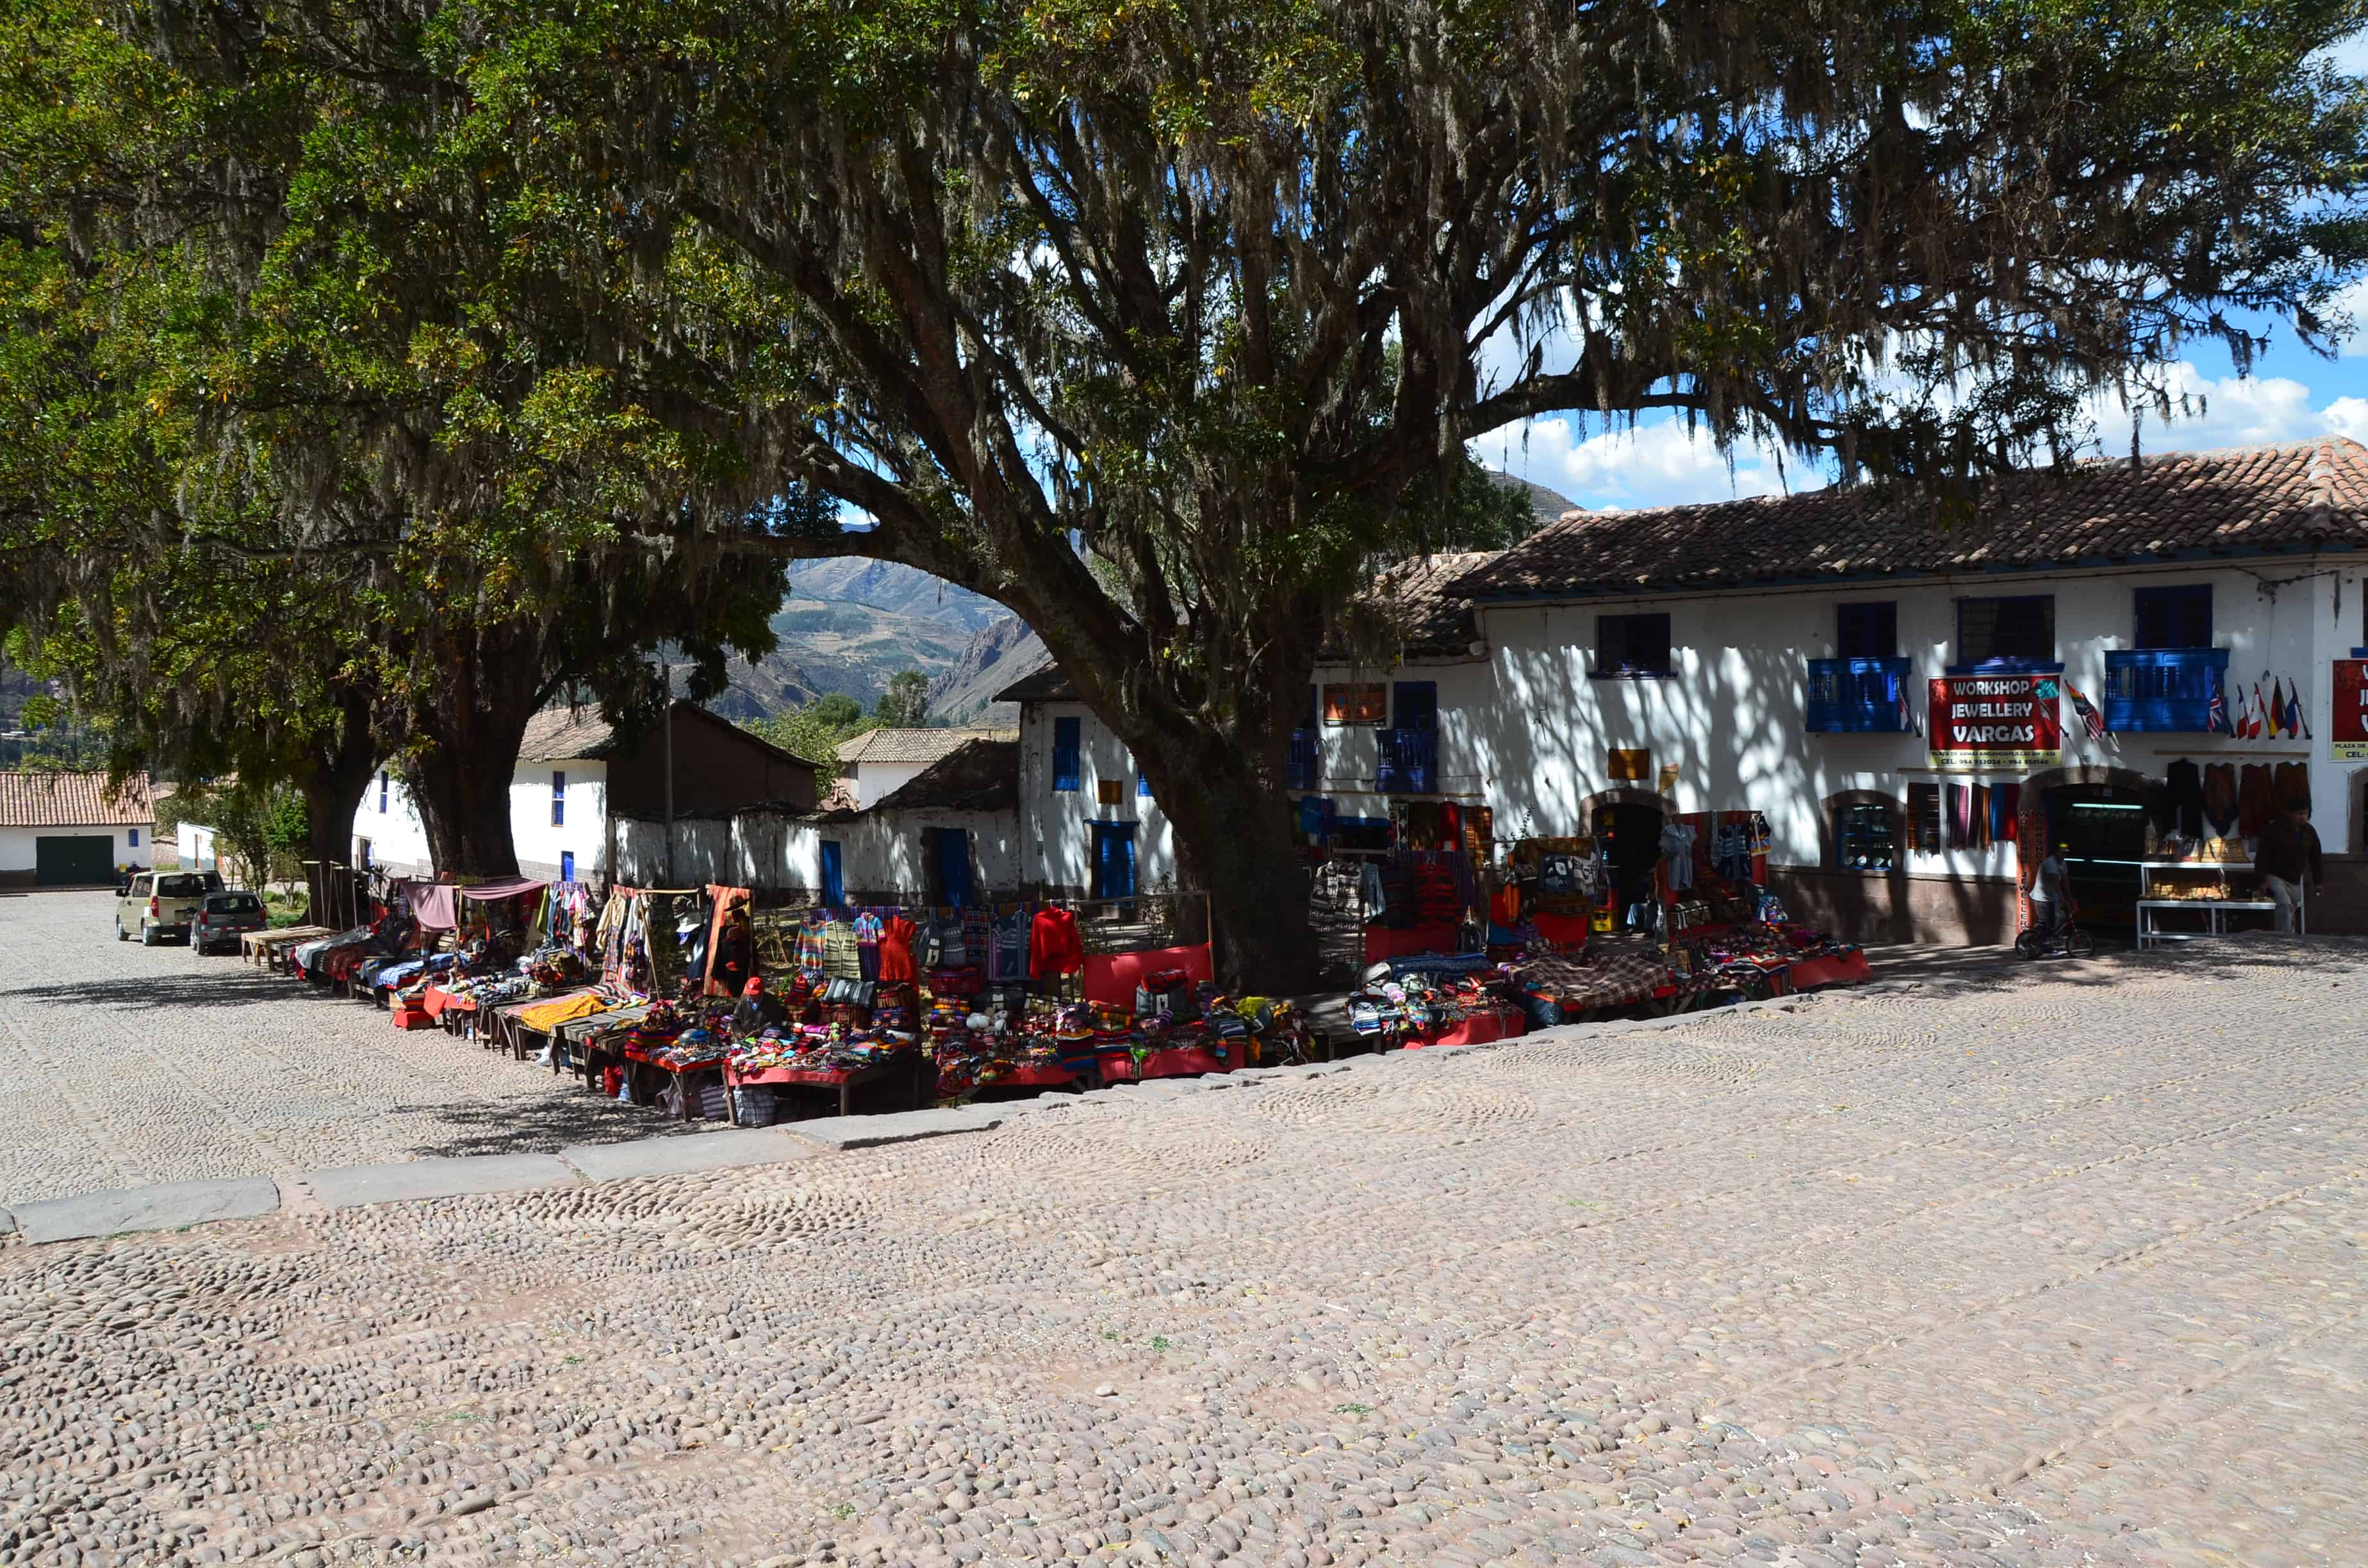 Craft market in Andahuaylillas, Peru